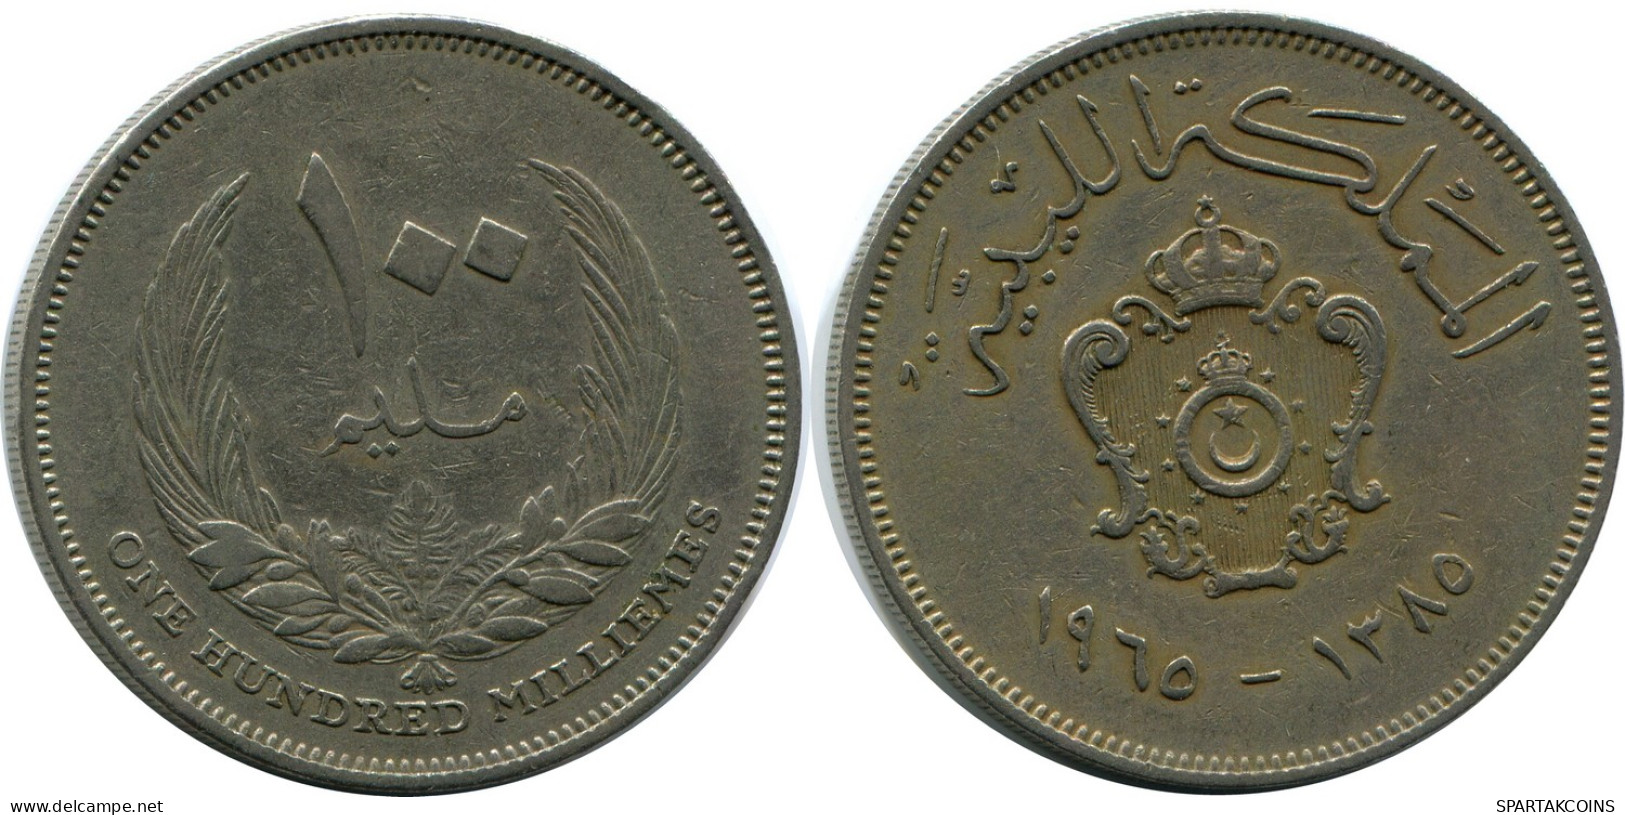 100 MILLIEMES 1960 LIBYA Coin #AR019.U - Libye